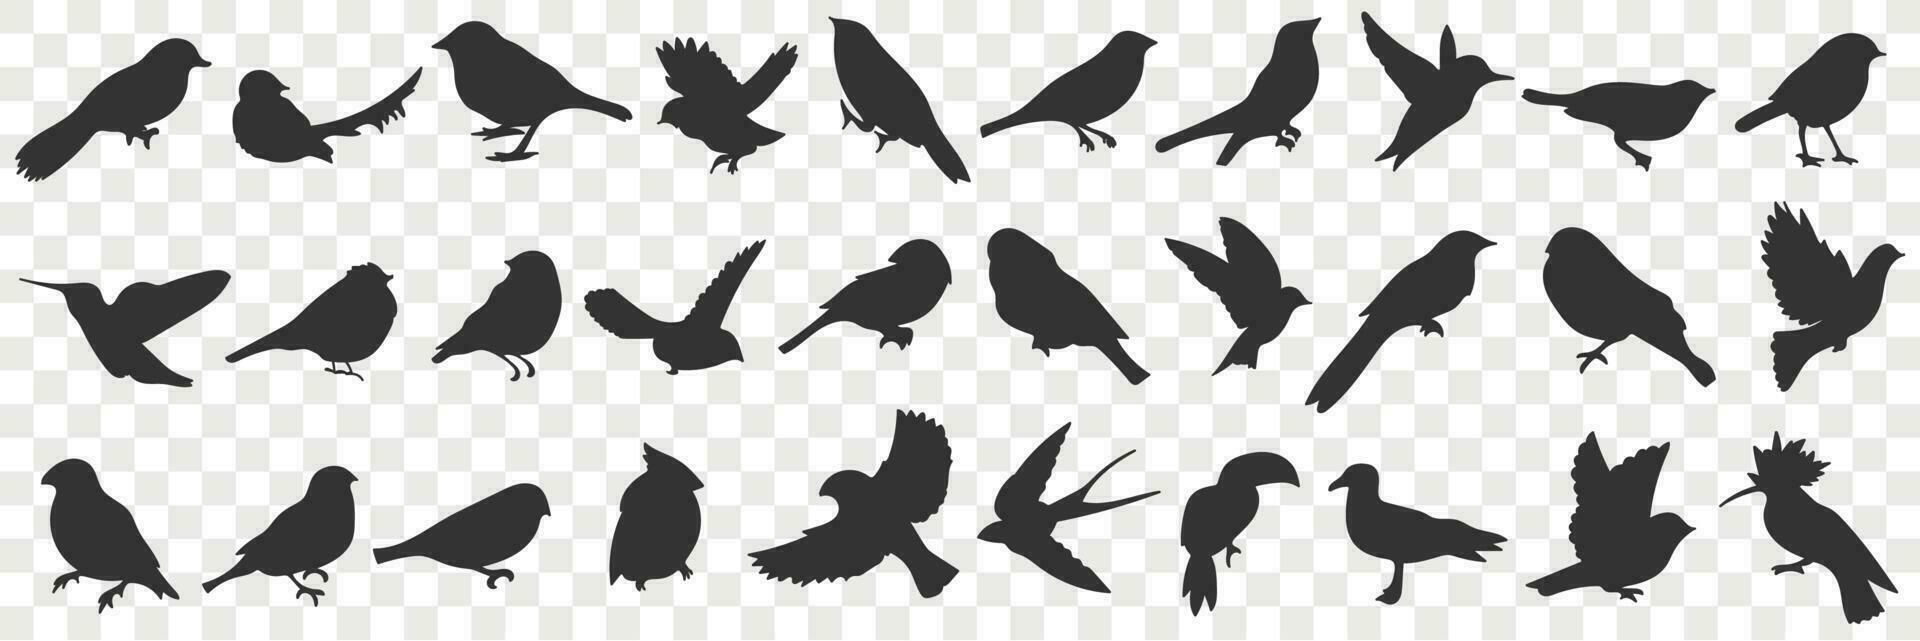 siluetas de aves garabatear colocar. colección de mano dibujado varios negro siluetas de volador sentado aves con alas en filas en transparente vector